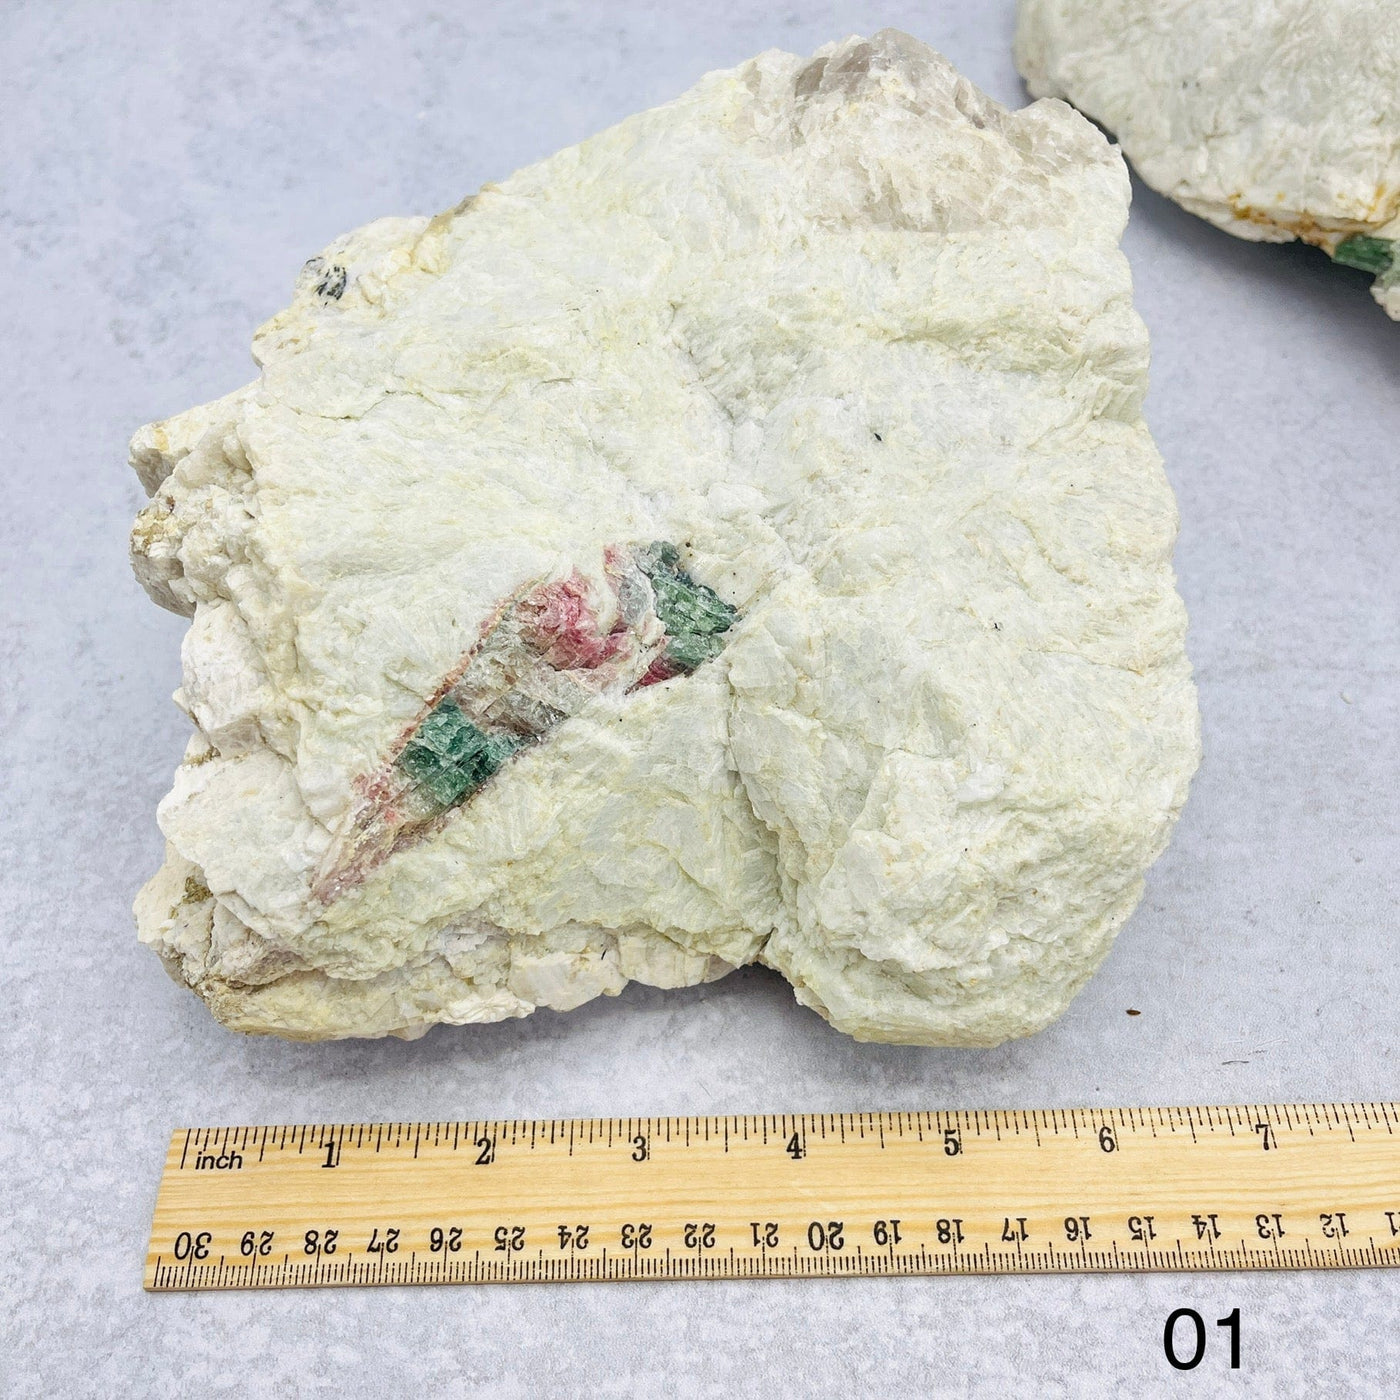 Quartz Watermelon Tourmaline Formation - With Measurements